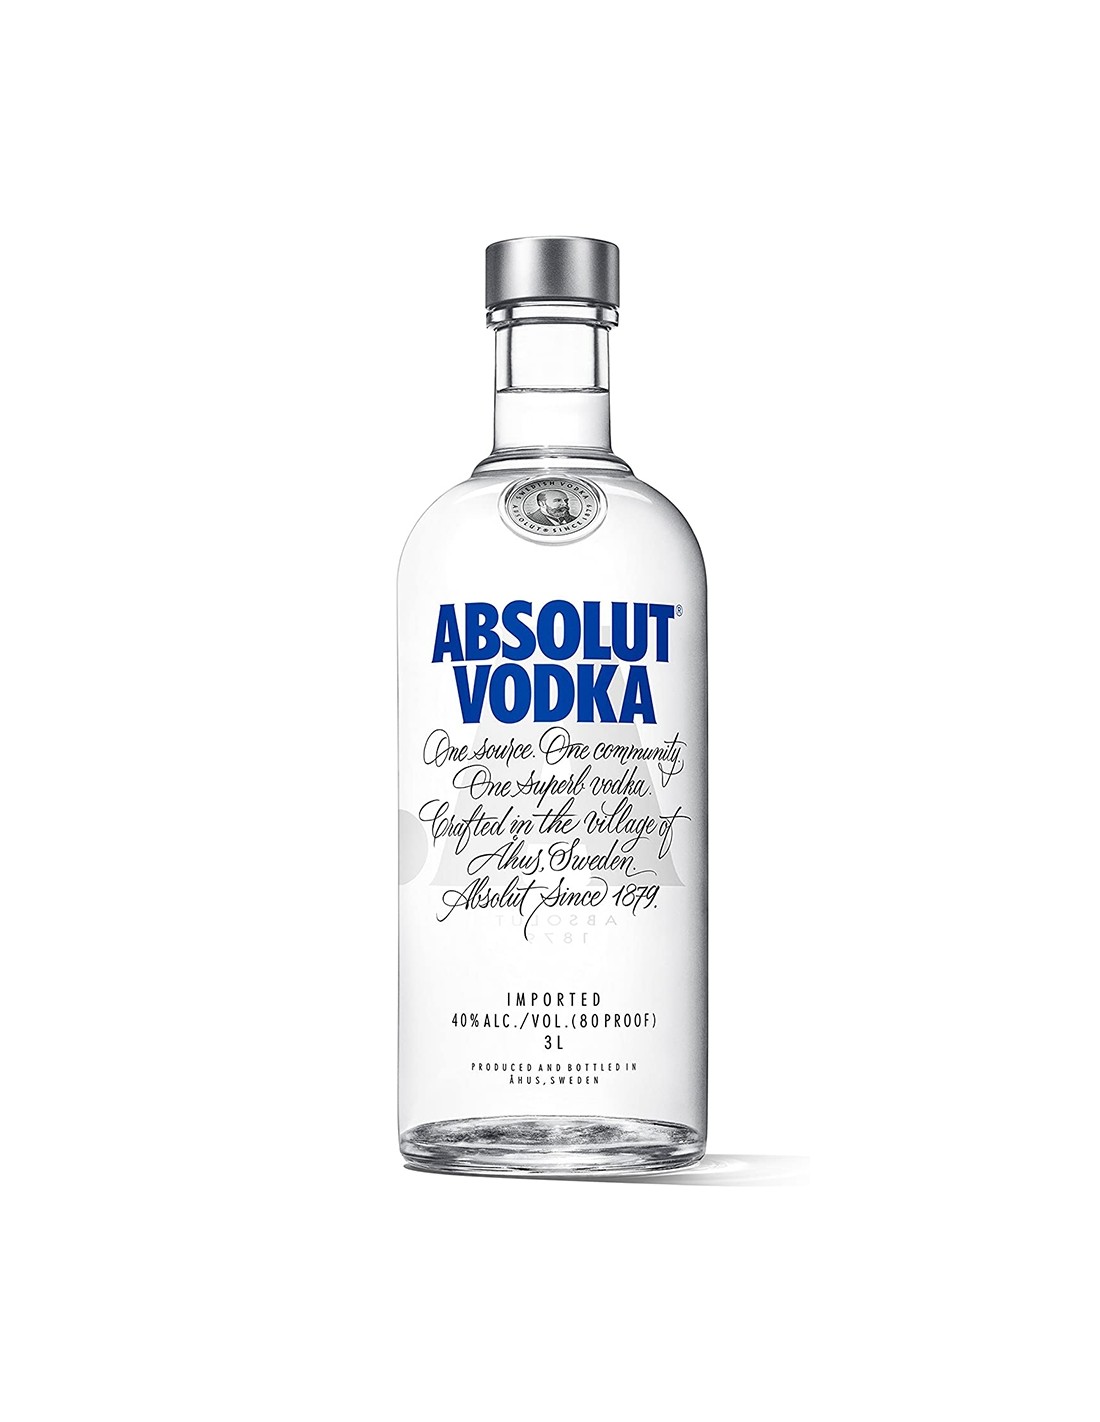 Vodca Absolut Blue 3L, 40% alc., Suedia alcooldiscount.ro